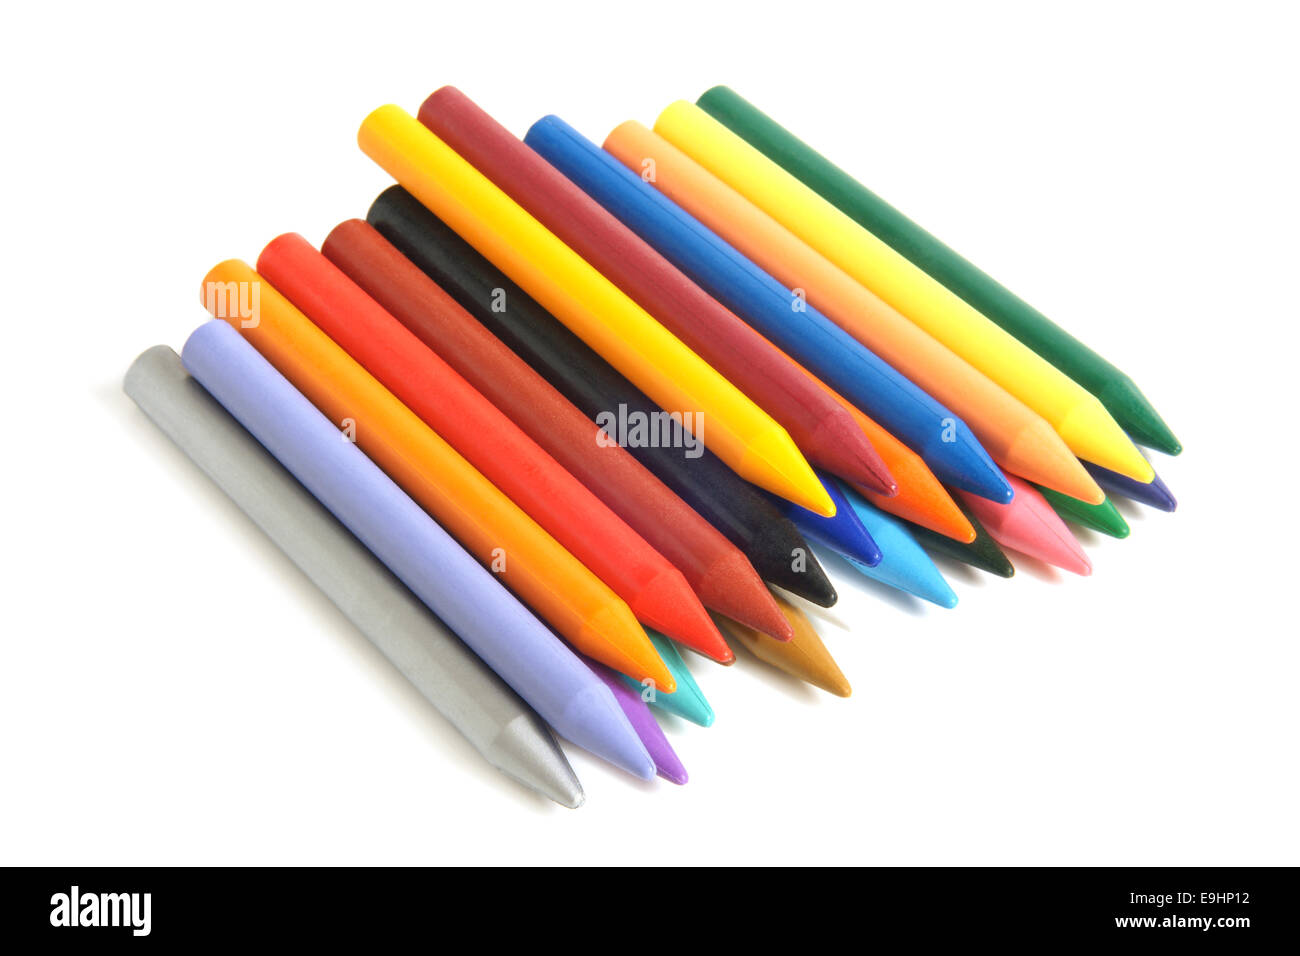 Wax crayons Banque d'images détourées - Alamy